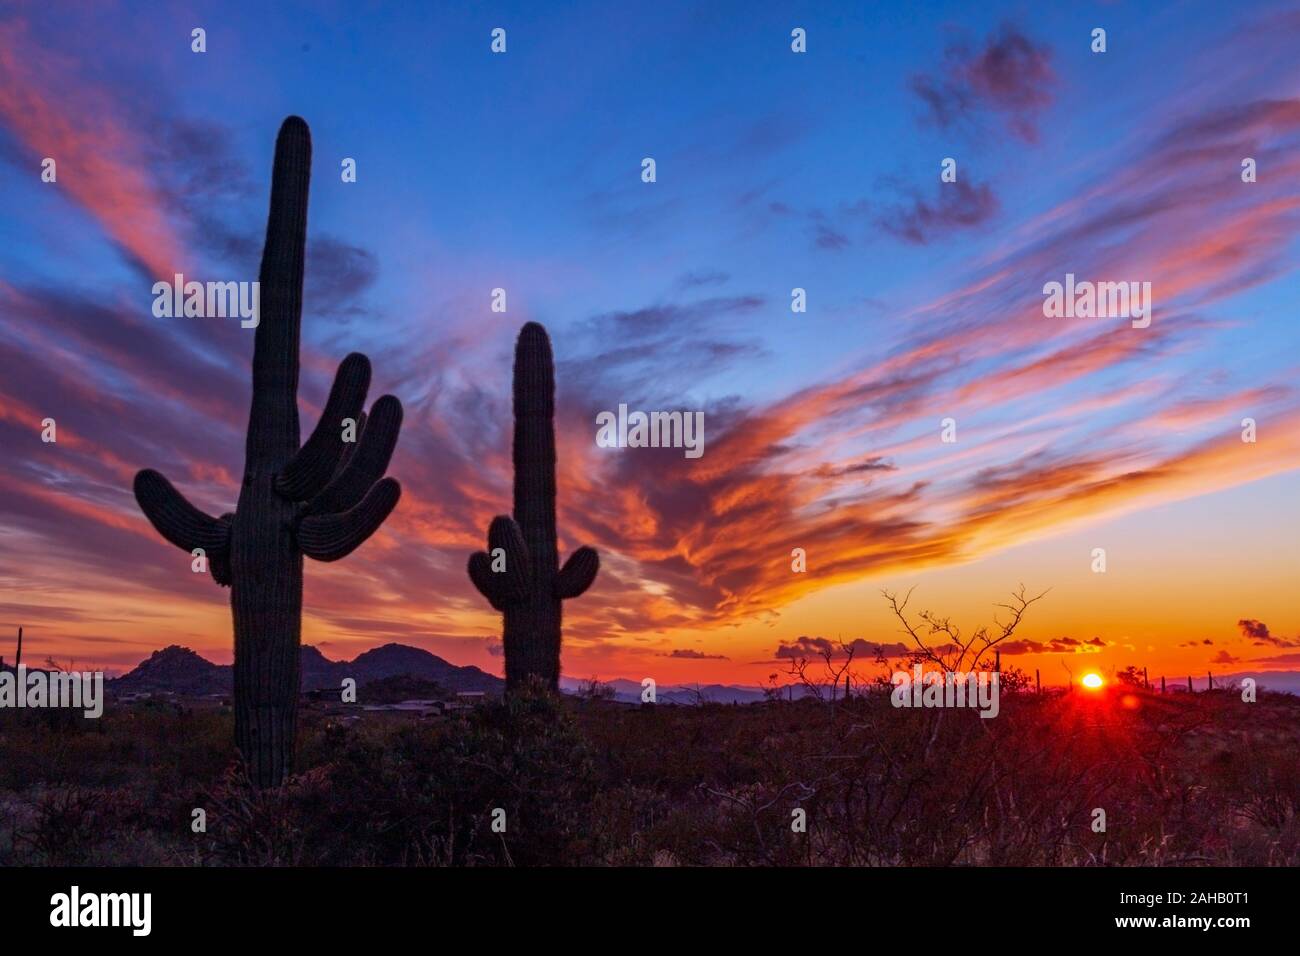 Classic Arizona il paesaggio del deserto con cactus Saguaro e vibrante louds colorati Foto Stock